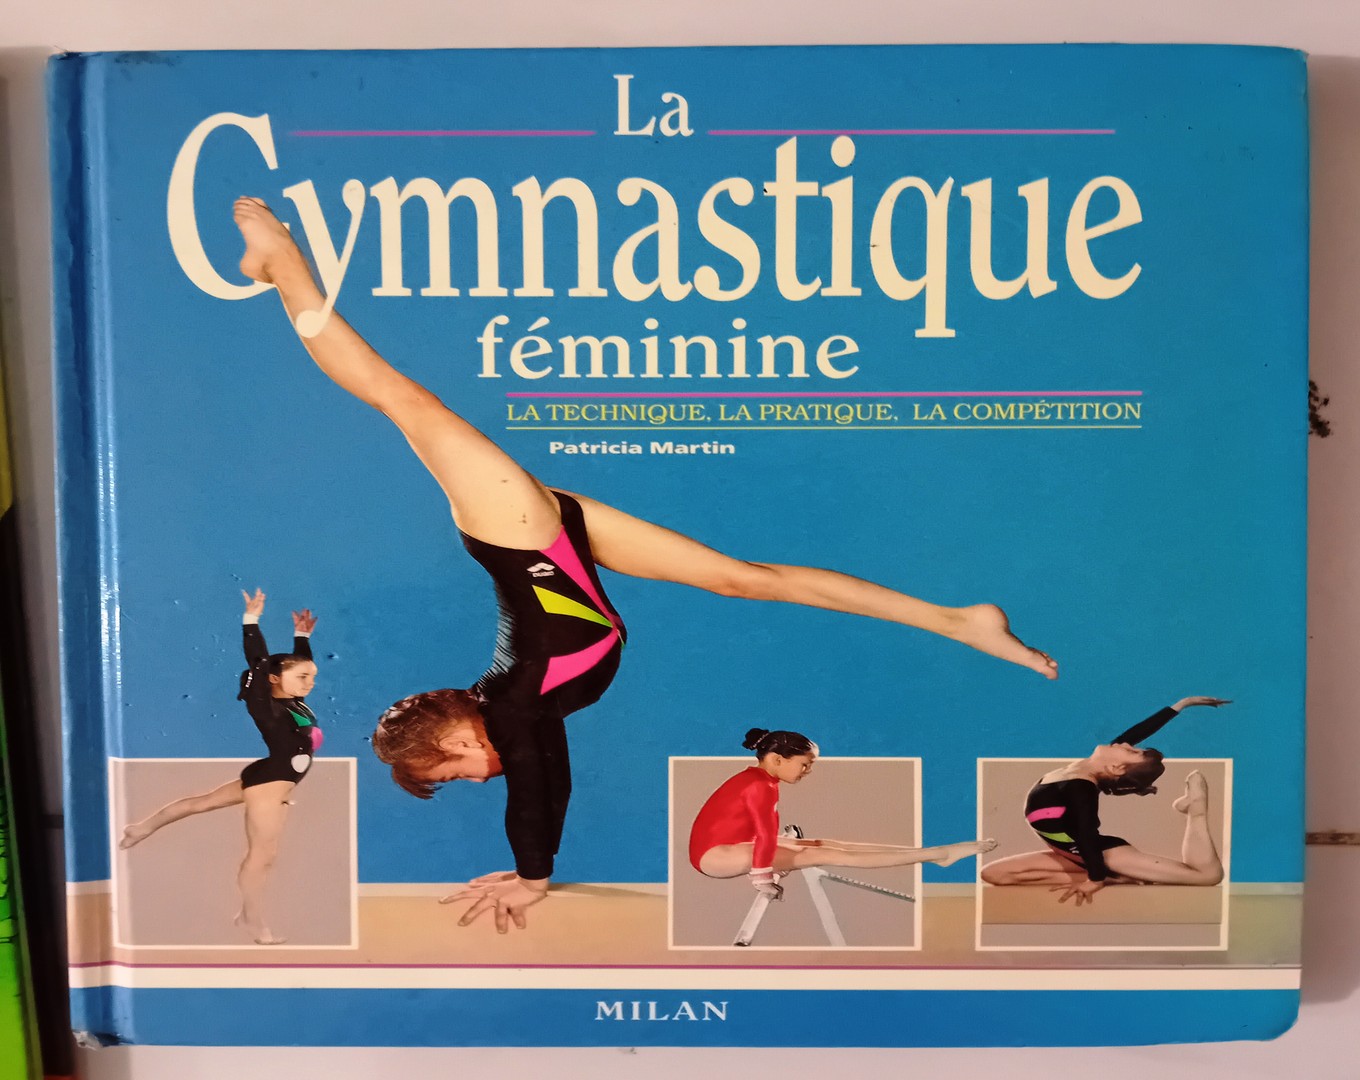 libros y revistas - Libro francés muy completo en imágenes sobre gimnasia femenina. 0